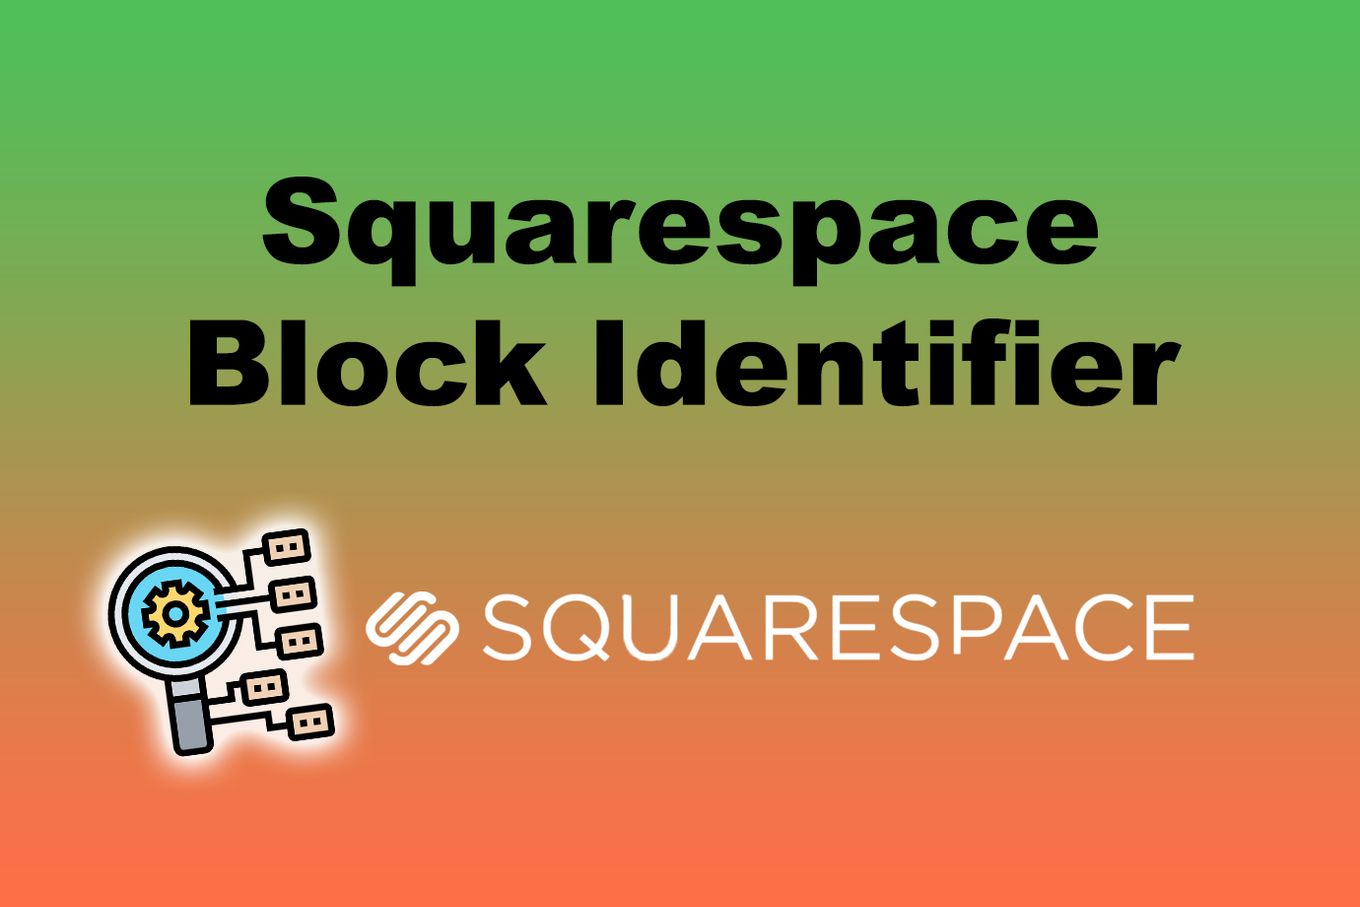 Squarespace Block Identifier